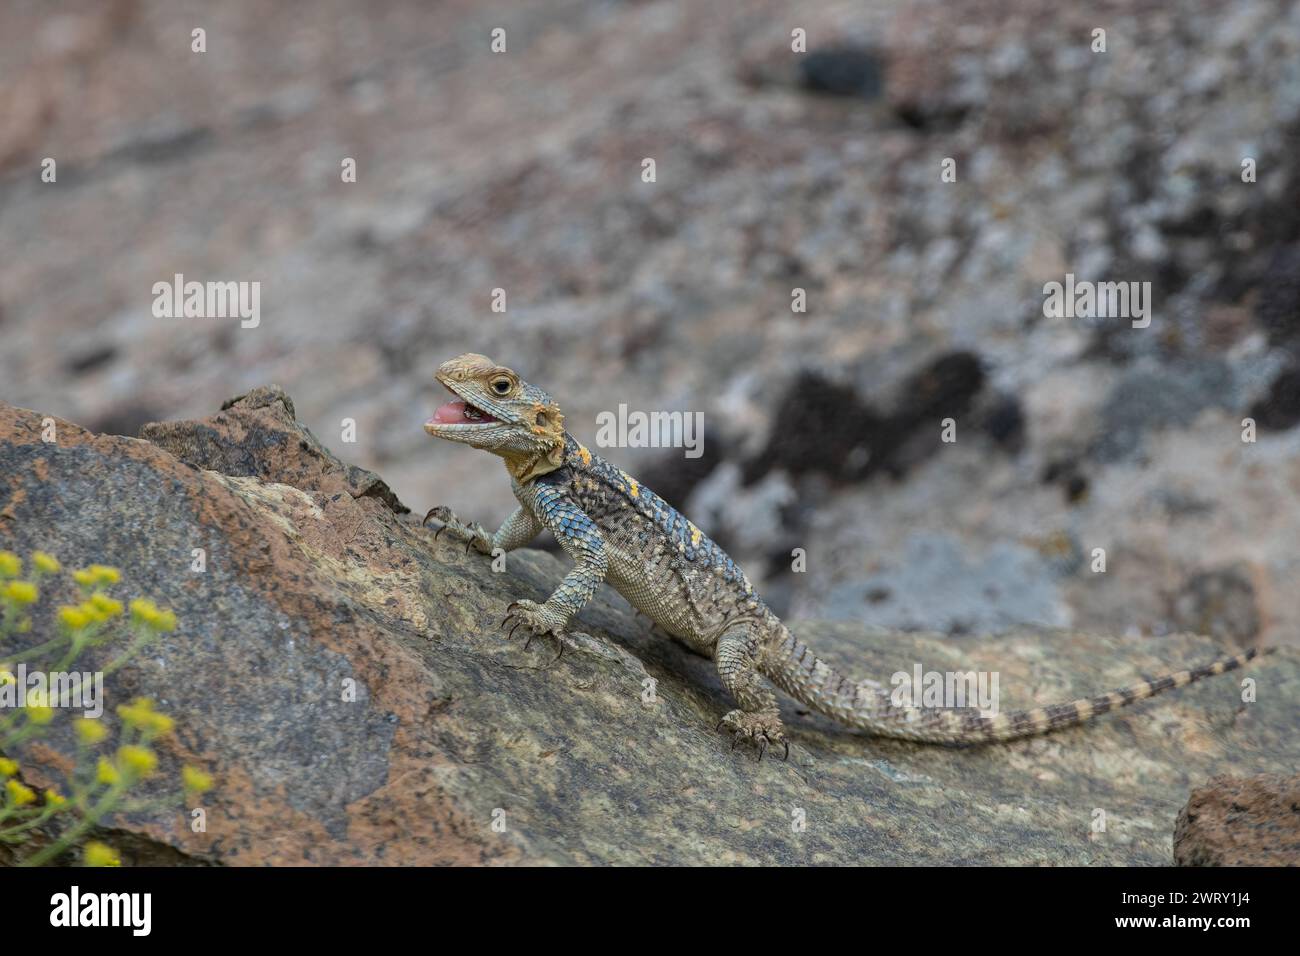 Lucertola hardun grigia (Laudakia stellio) che mangia un insetto catturato su una roccia nel suo habitat naturale. Foto Stock